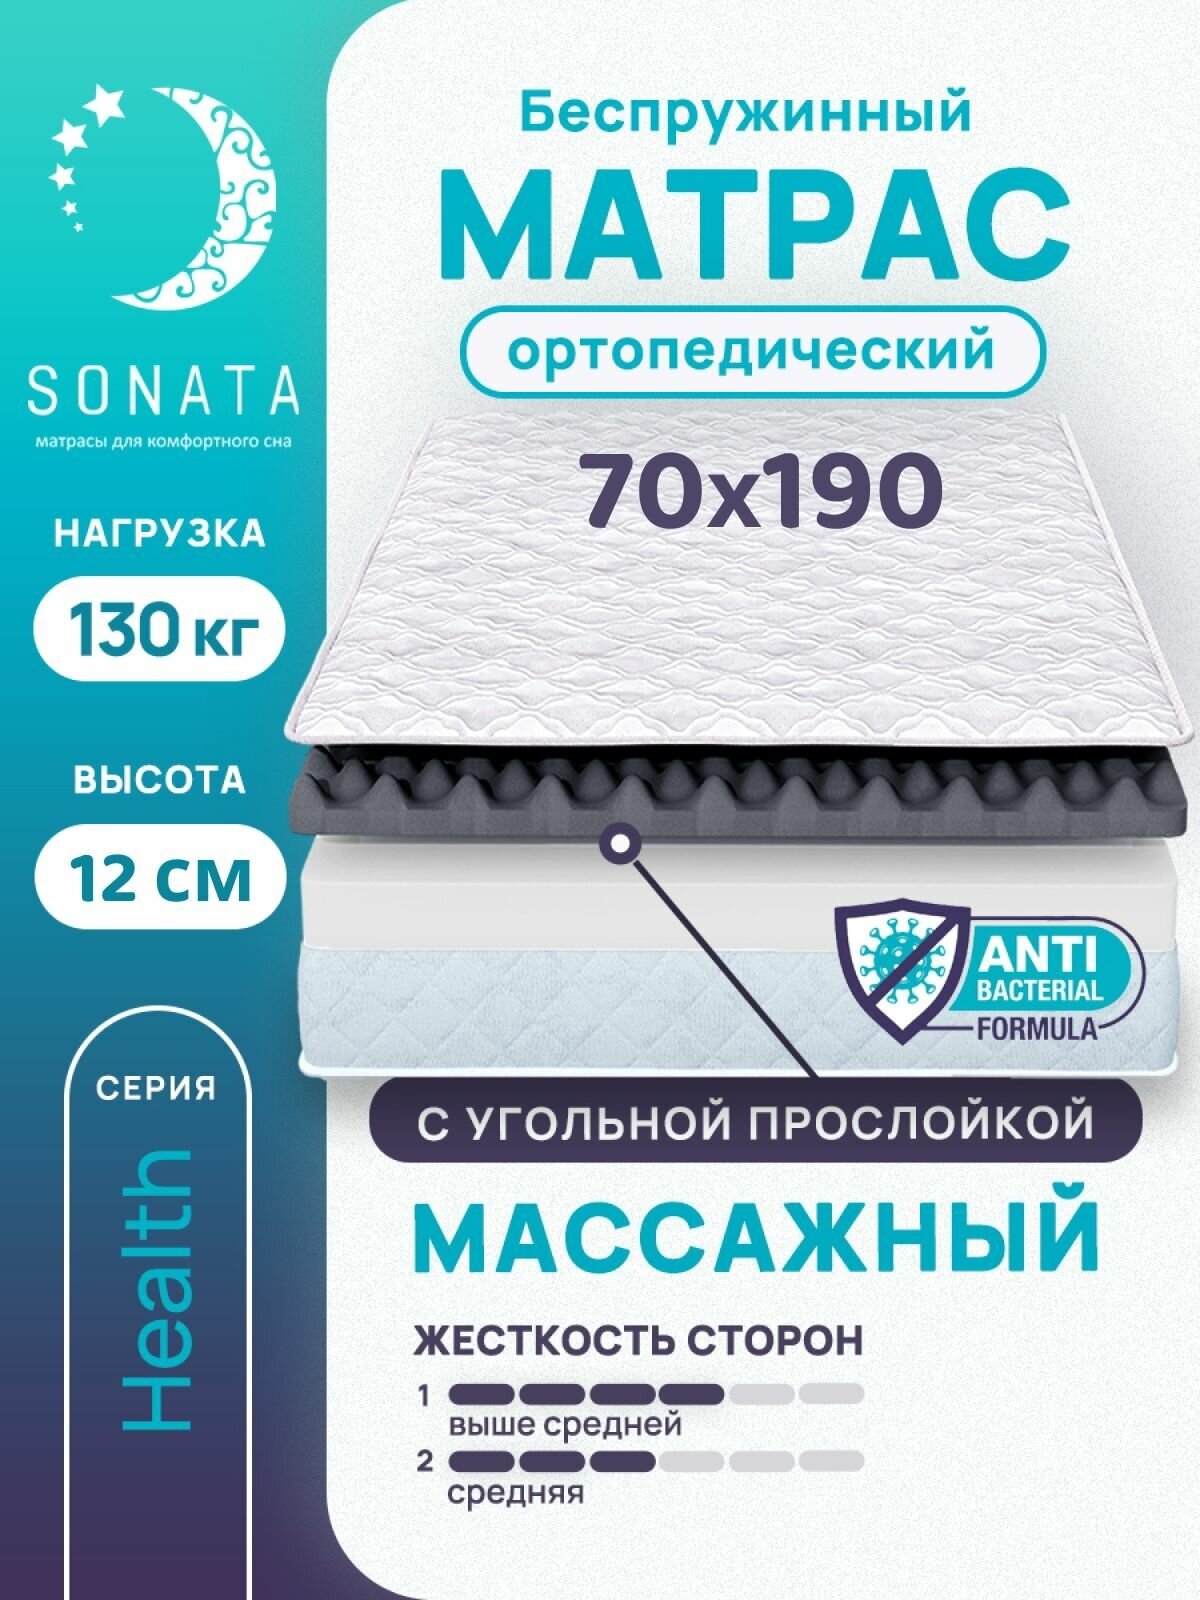 Матрас 70х190 см SONATA, беспружинный, односпальный, матрац для кровати, высота 12 см, с массажным эффектом